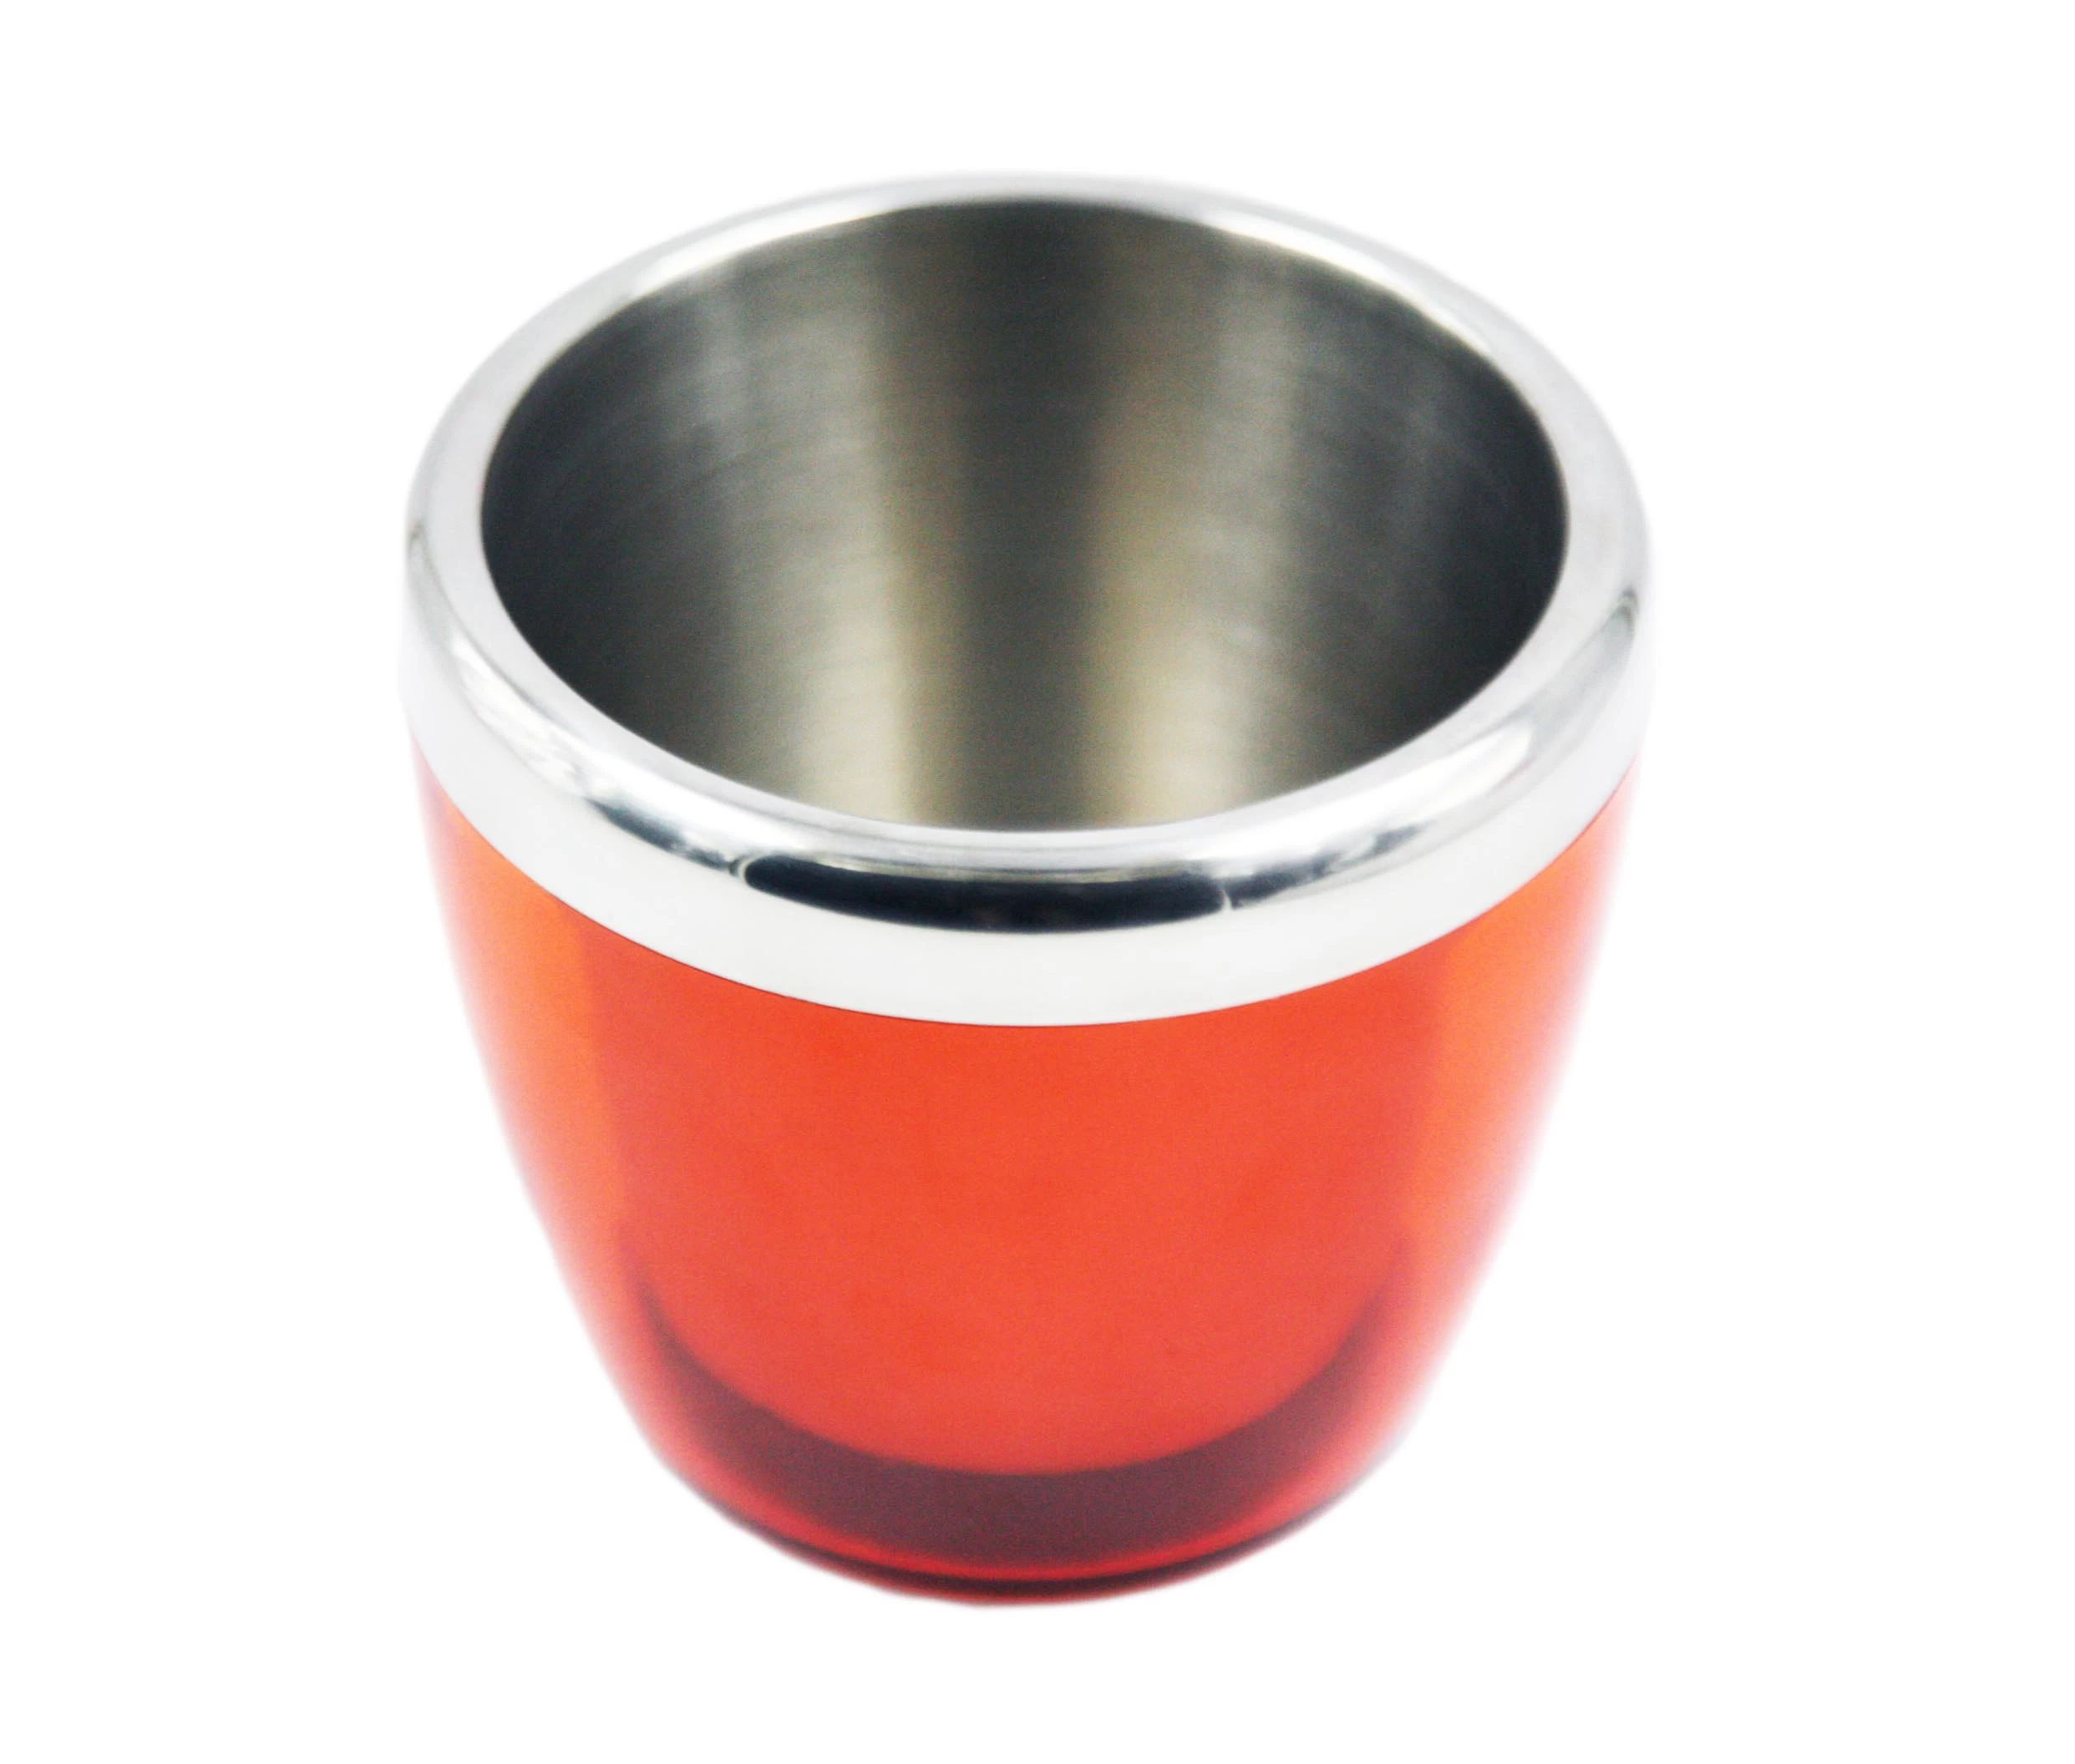 ice bucket supplier china, Stainless Steel Ice Bucket China, Stainless Steel Double Wall Thin Waist Ice Bucket